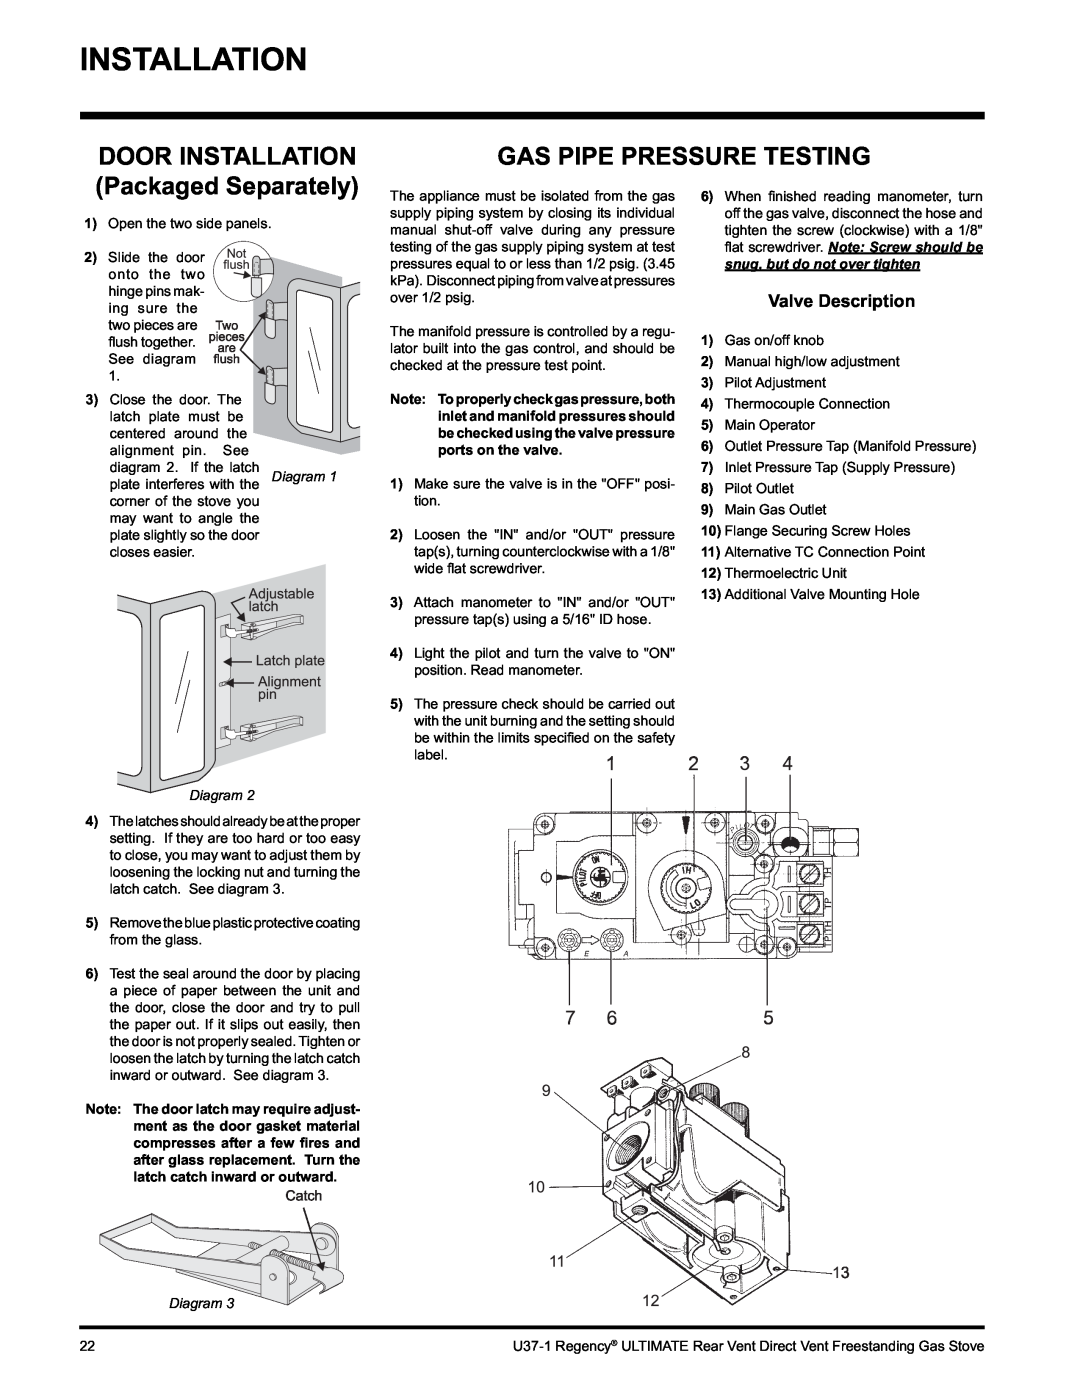 Regency U37-LP1, U37-NG1 Installation, Gas Pipe Pressure Testing, DOOR INSTALLATION Packaged Separately, Diagram 